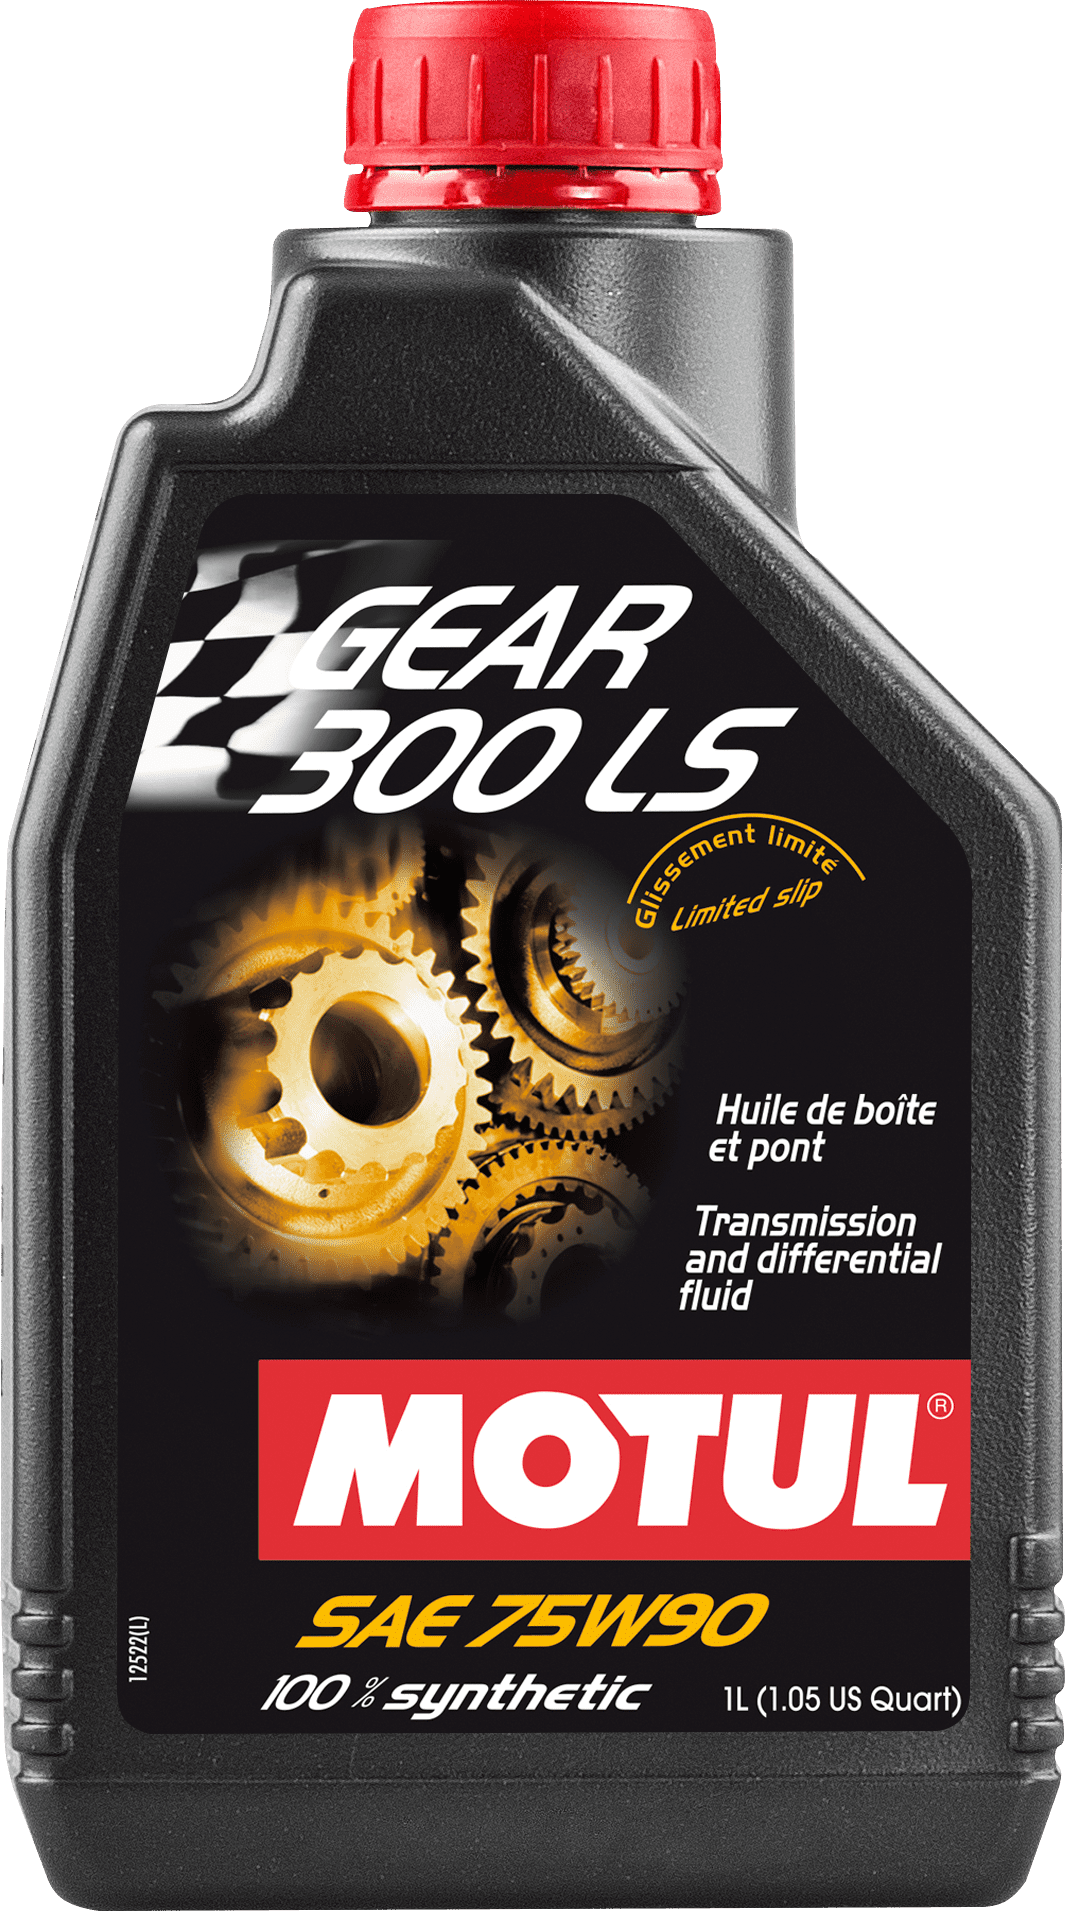 Motul Gear 300 LS 75W-90, 1 lt